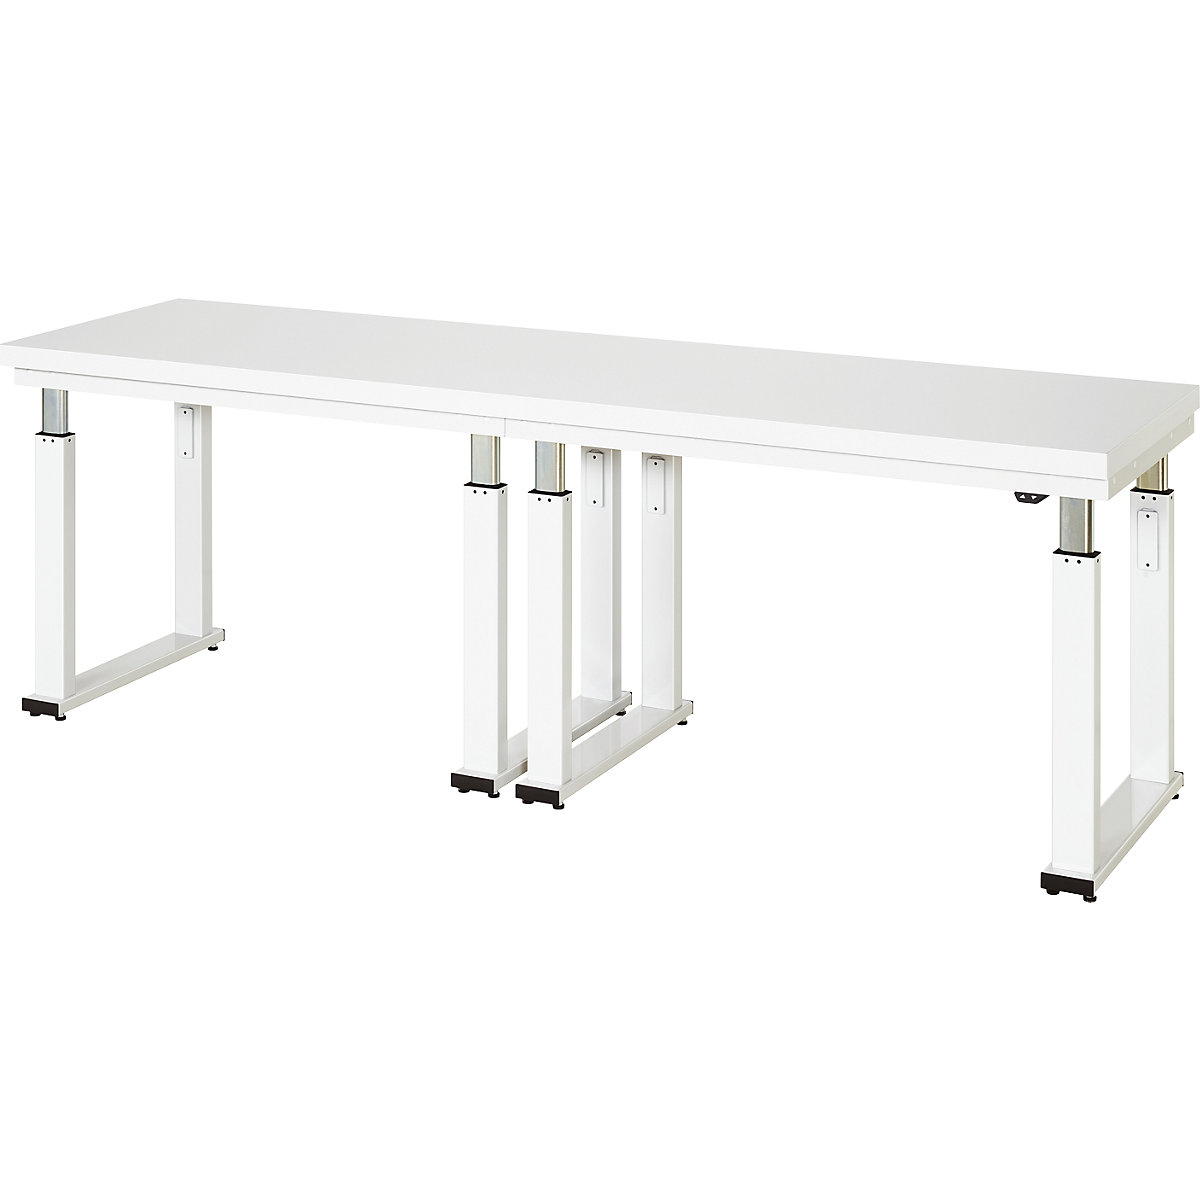 Psací stůl s elektrickým přestavováním výšky – RAU, deska z tvrdého laminátu, nosnost 600 kg, š x h 2500 x 700 mm-6